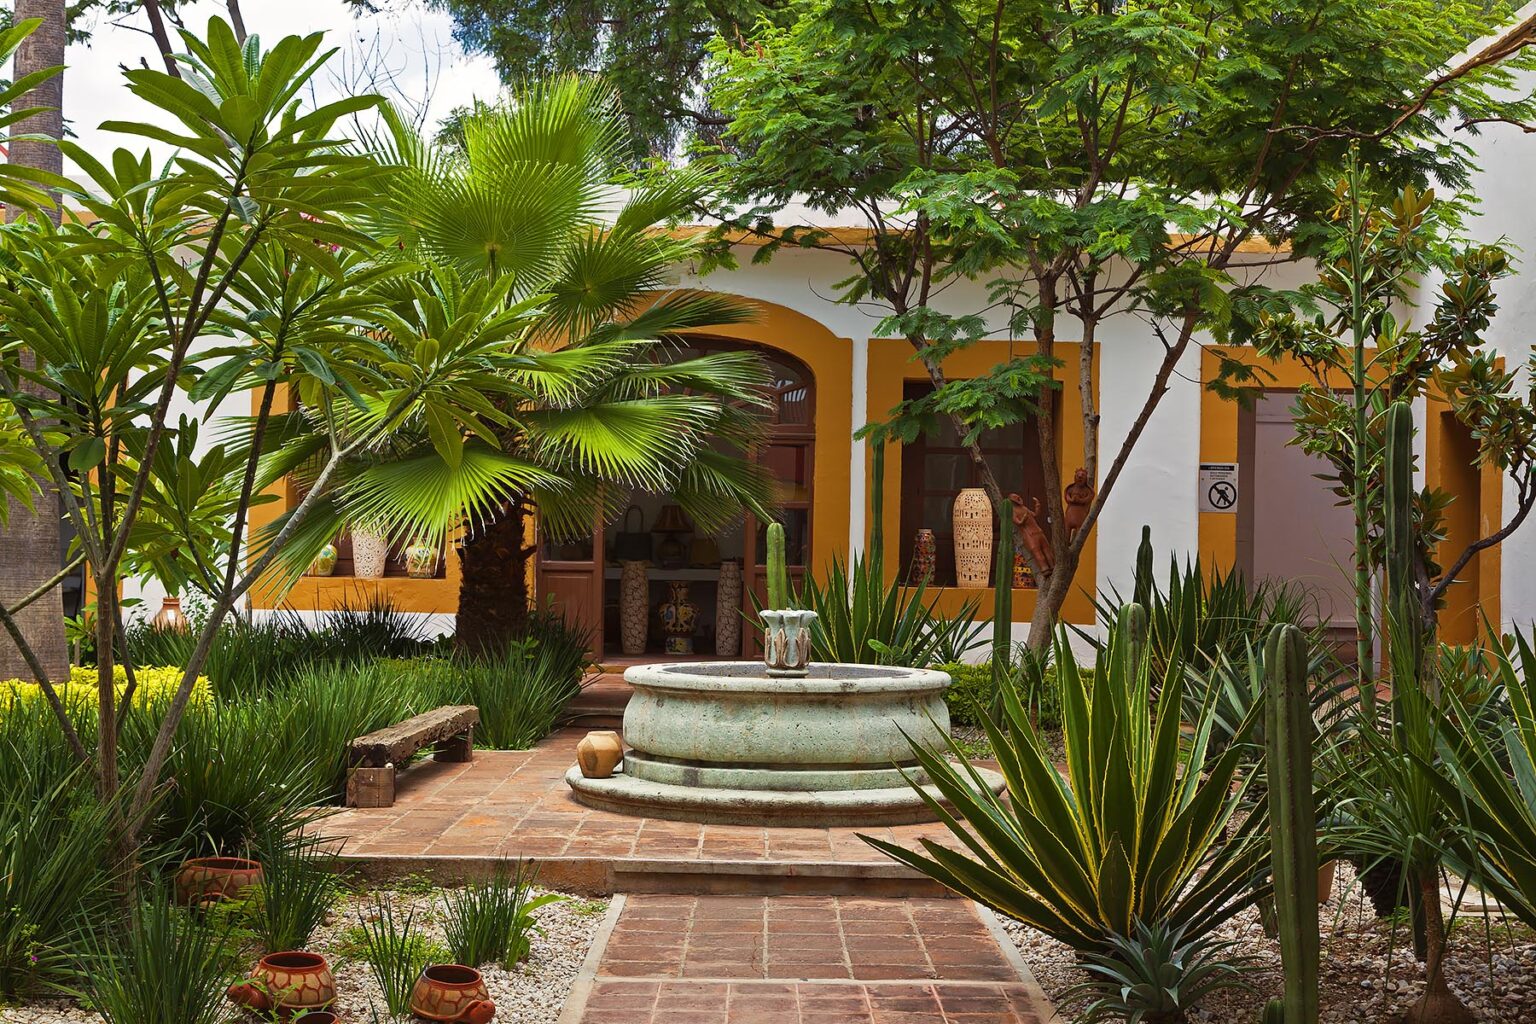 A GARDEN inside a courtyard of a local gallery - OAXACA, MEXICO